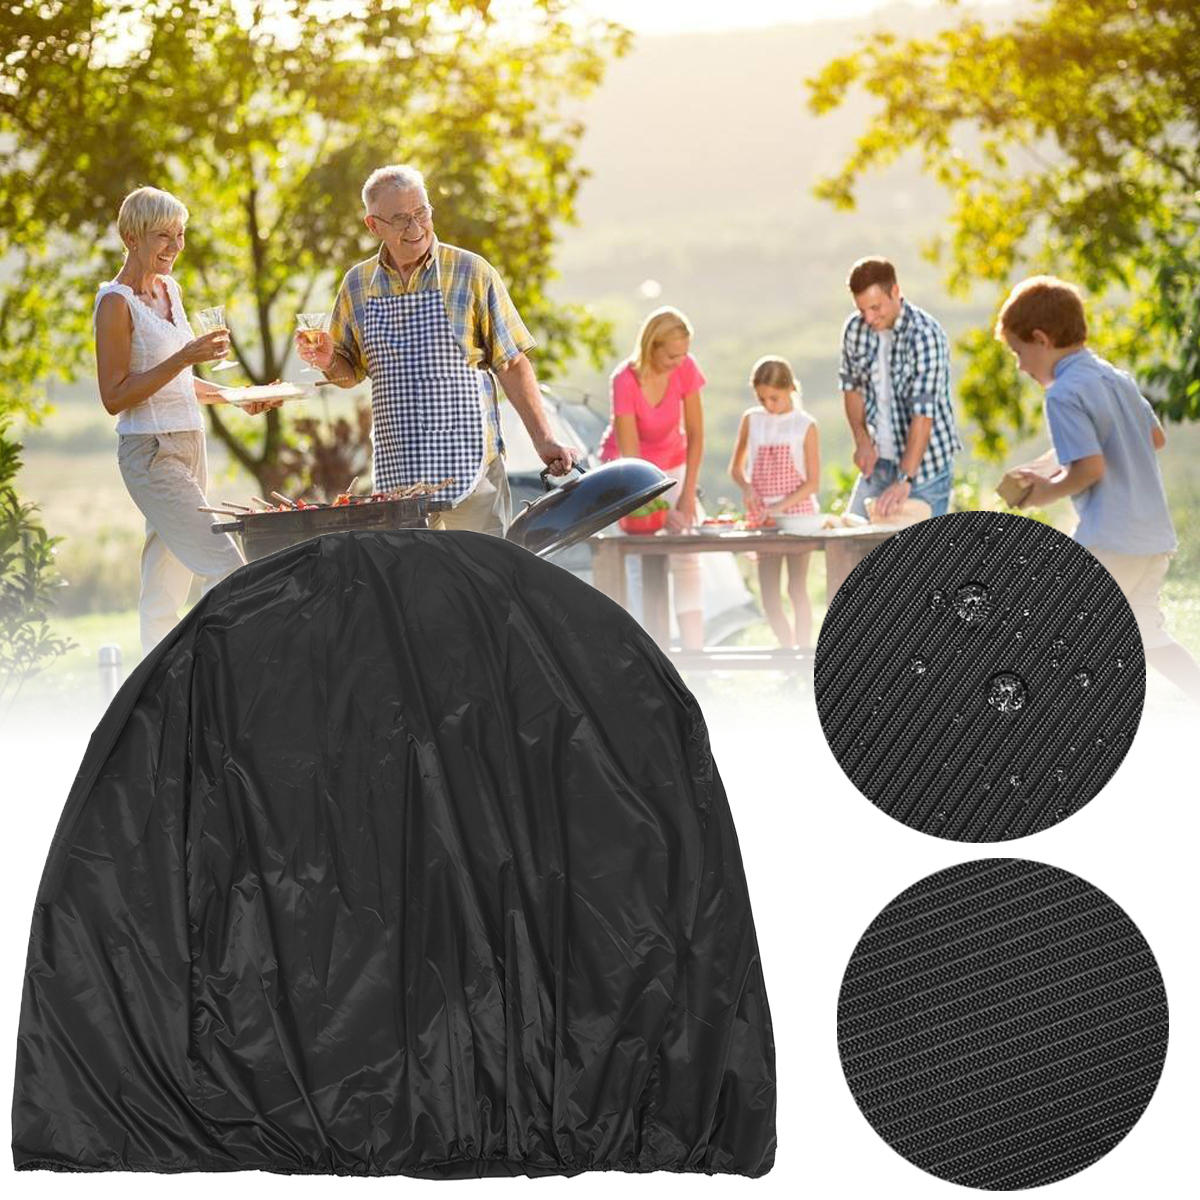 Cubierta de parrilla para barbacoa de 134x64,7x149,3 cm para exteriores, camping y picnic. Protege de la lluvia, el polvo, los rayos UV y la humedad.